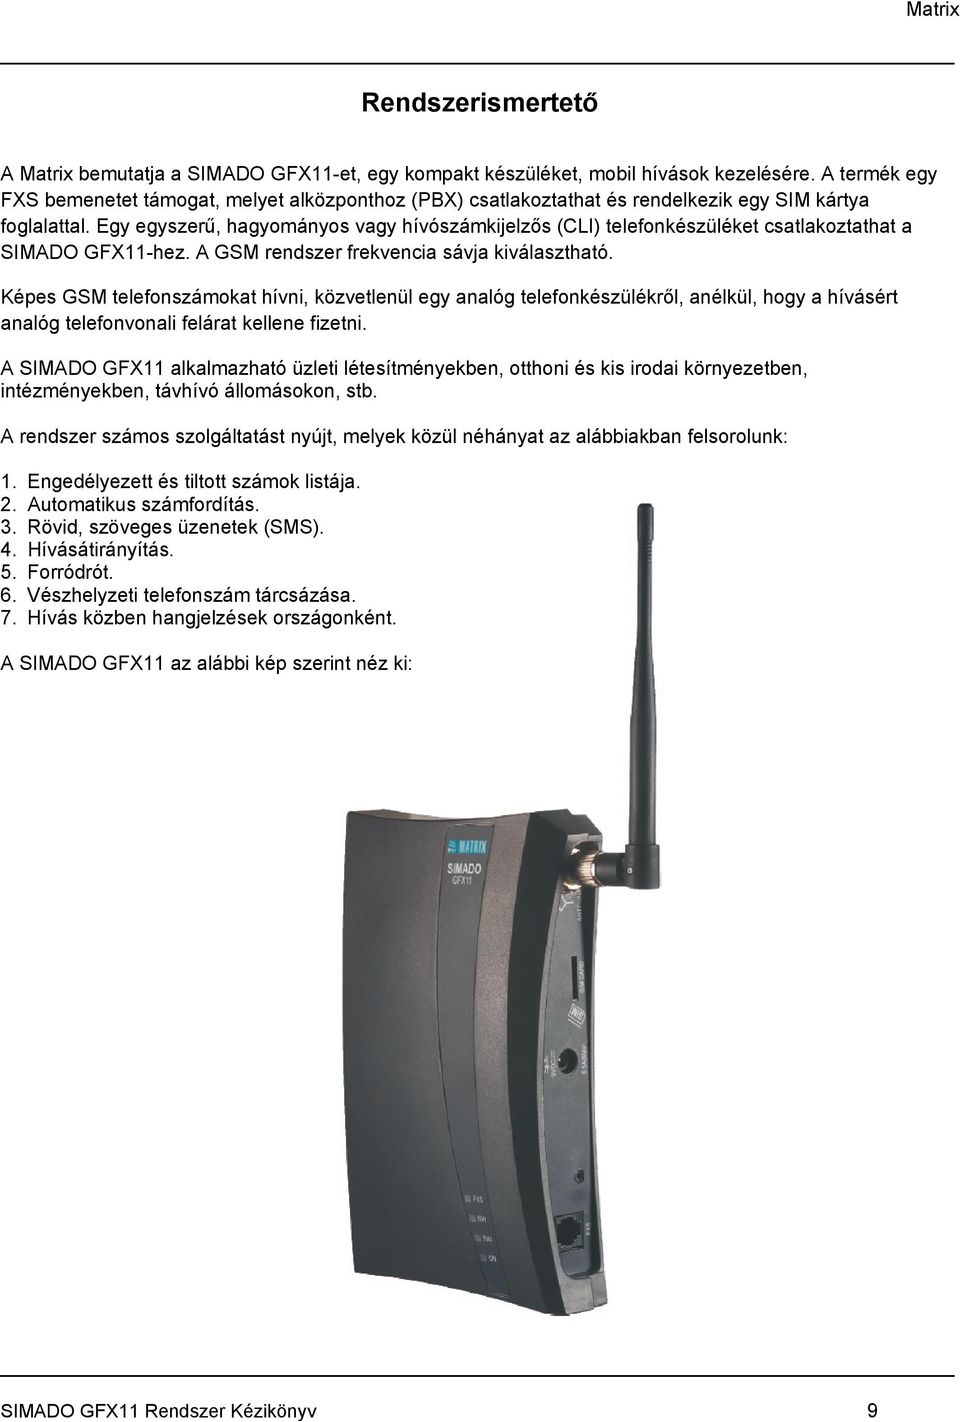 Egy egyszerű, hagyományos vagy hívószámkijelzős (CLI) telefonkészüléket csatlakoztathat a SIMADO GFX11-hez. A GSM rendszer frekvencia sávja kiválasztható.